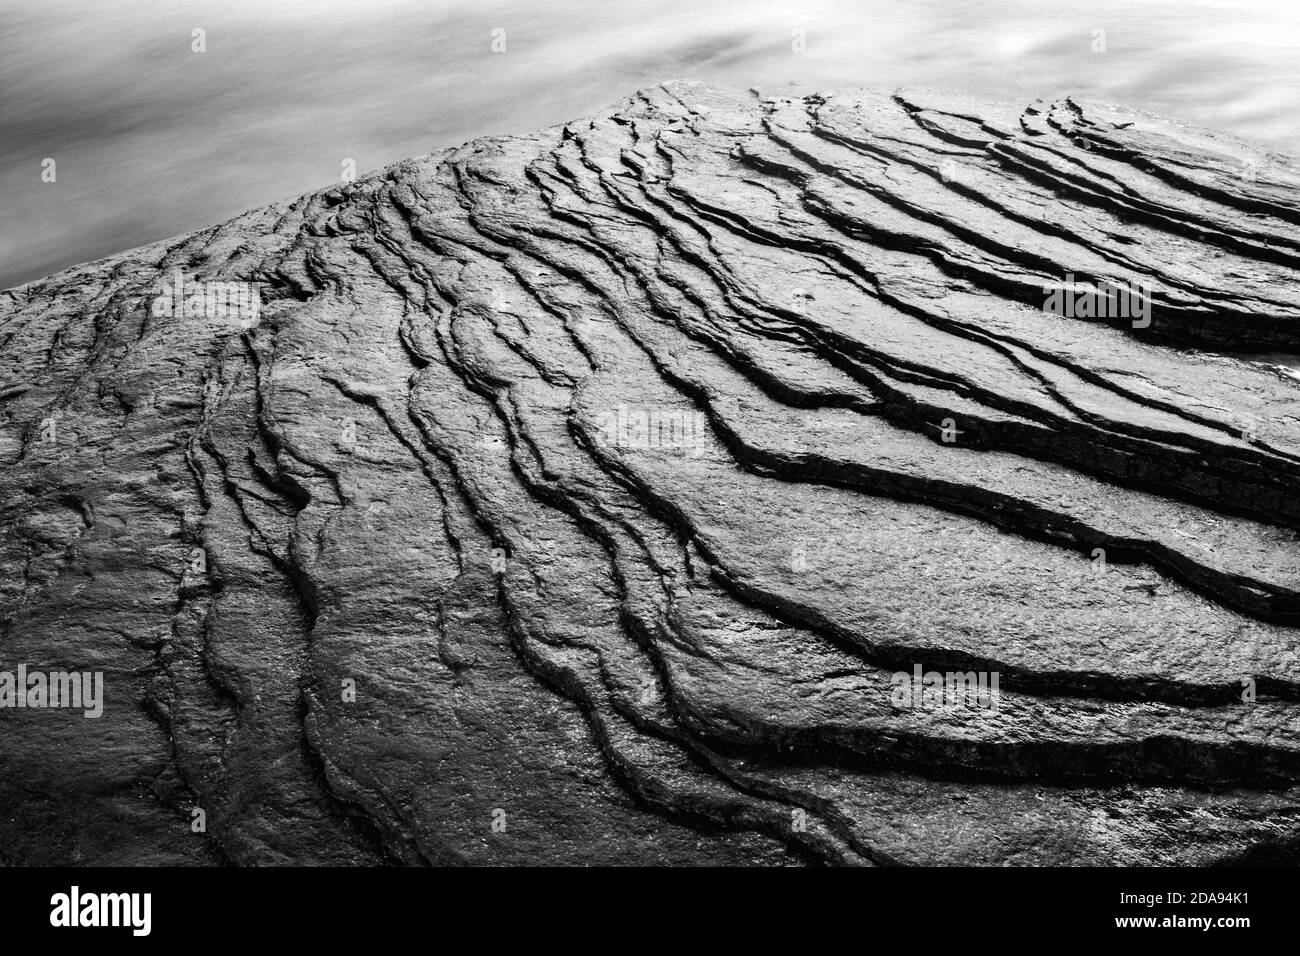 Astratti motivi rocciosi in torrente (B&W) - Pisgah National Forest, vicino a Brevard, Carolina del Nord, Stati Uniti Foto Stock